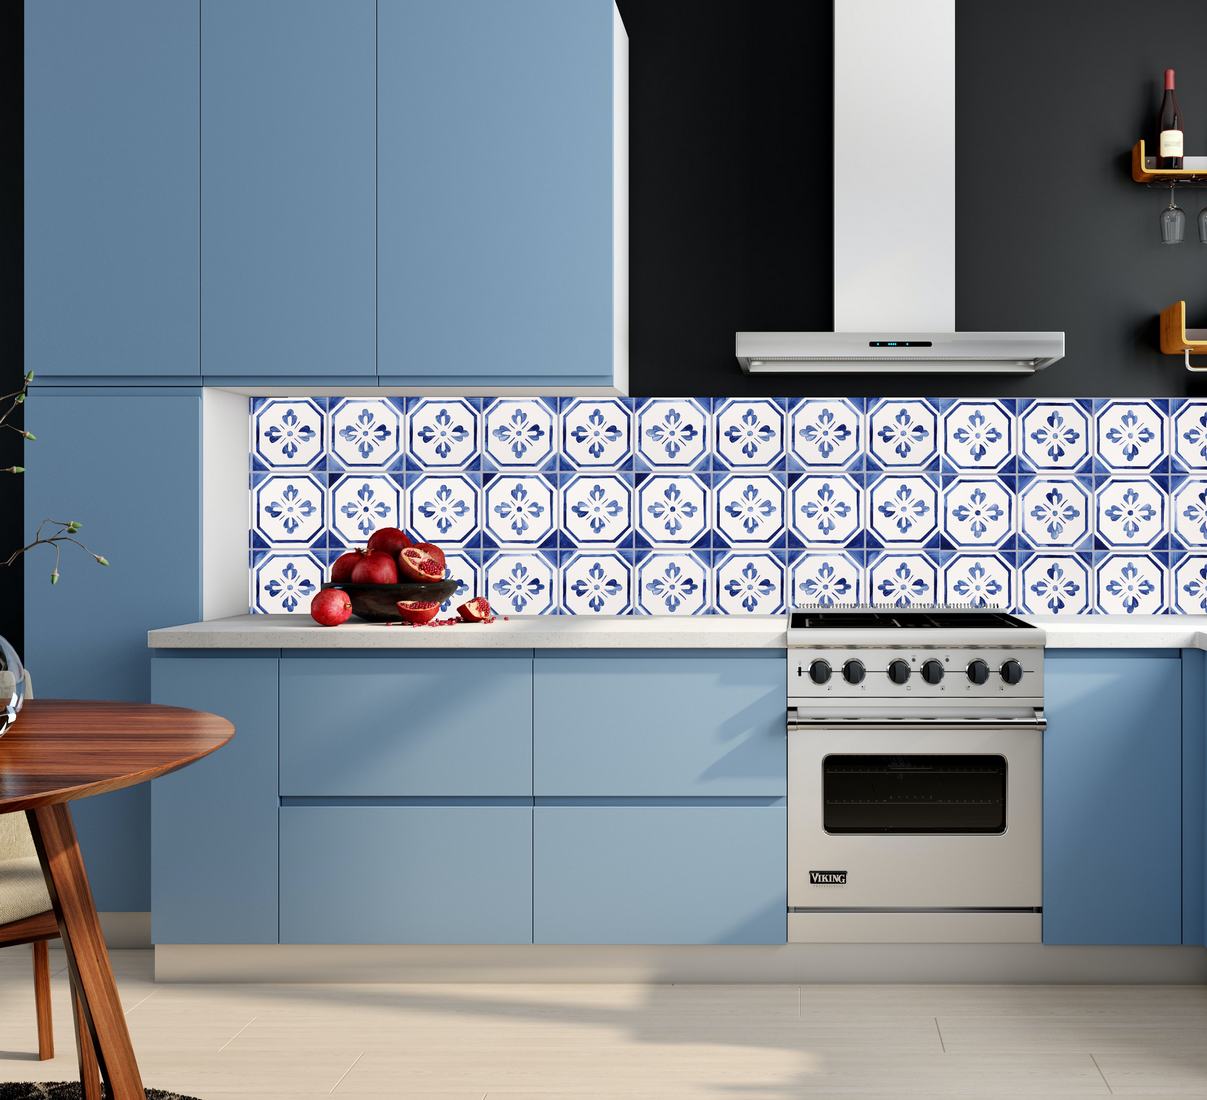 niebieska kuchnia i niebieskie kafle ręcznie malowane - fartuch kuchenny na ścianę gotowy!